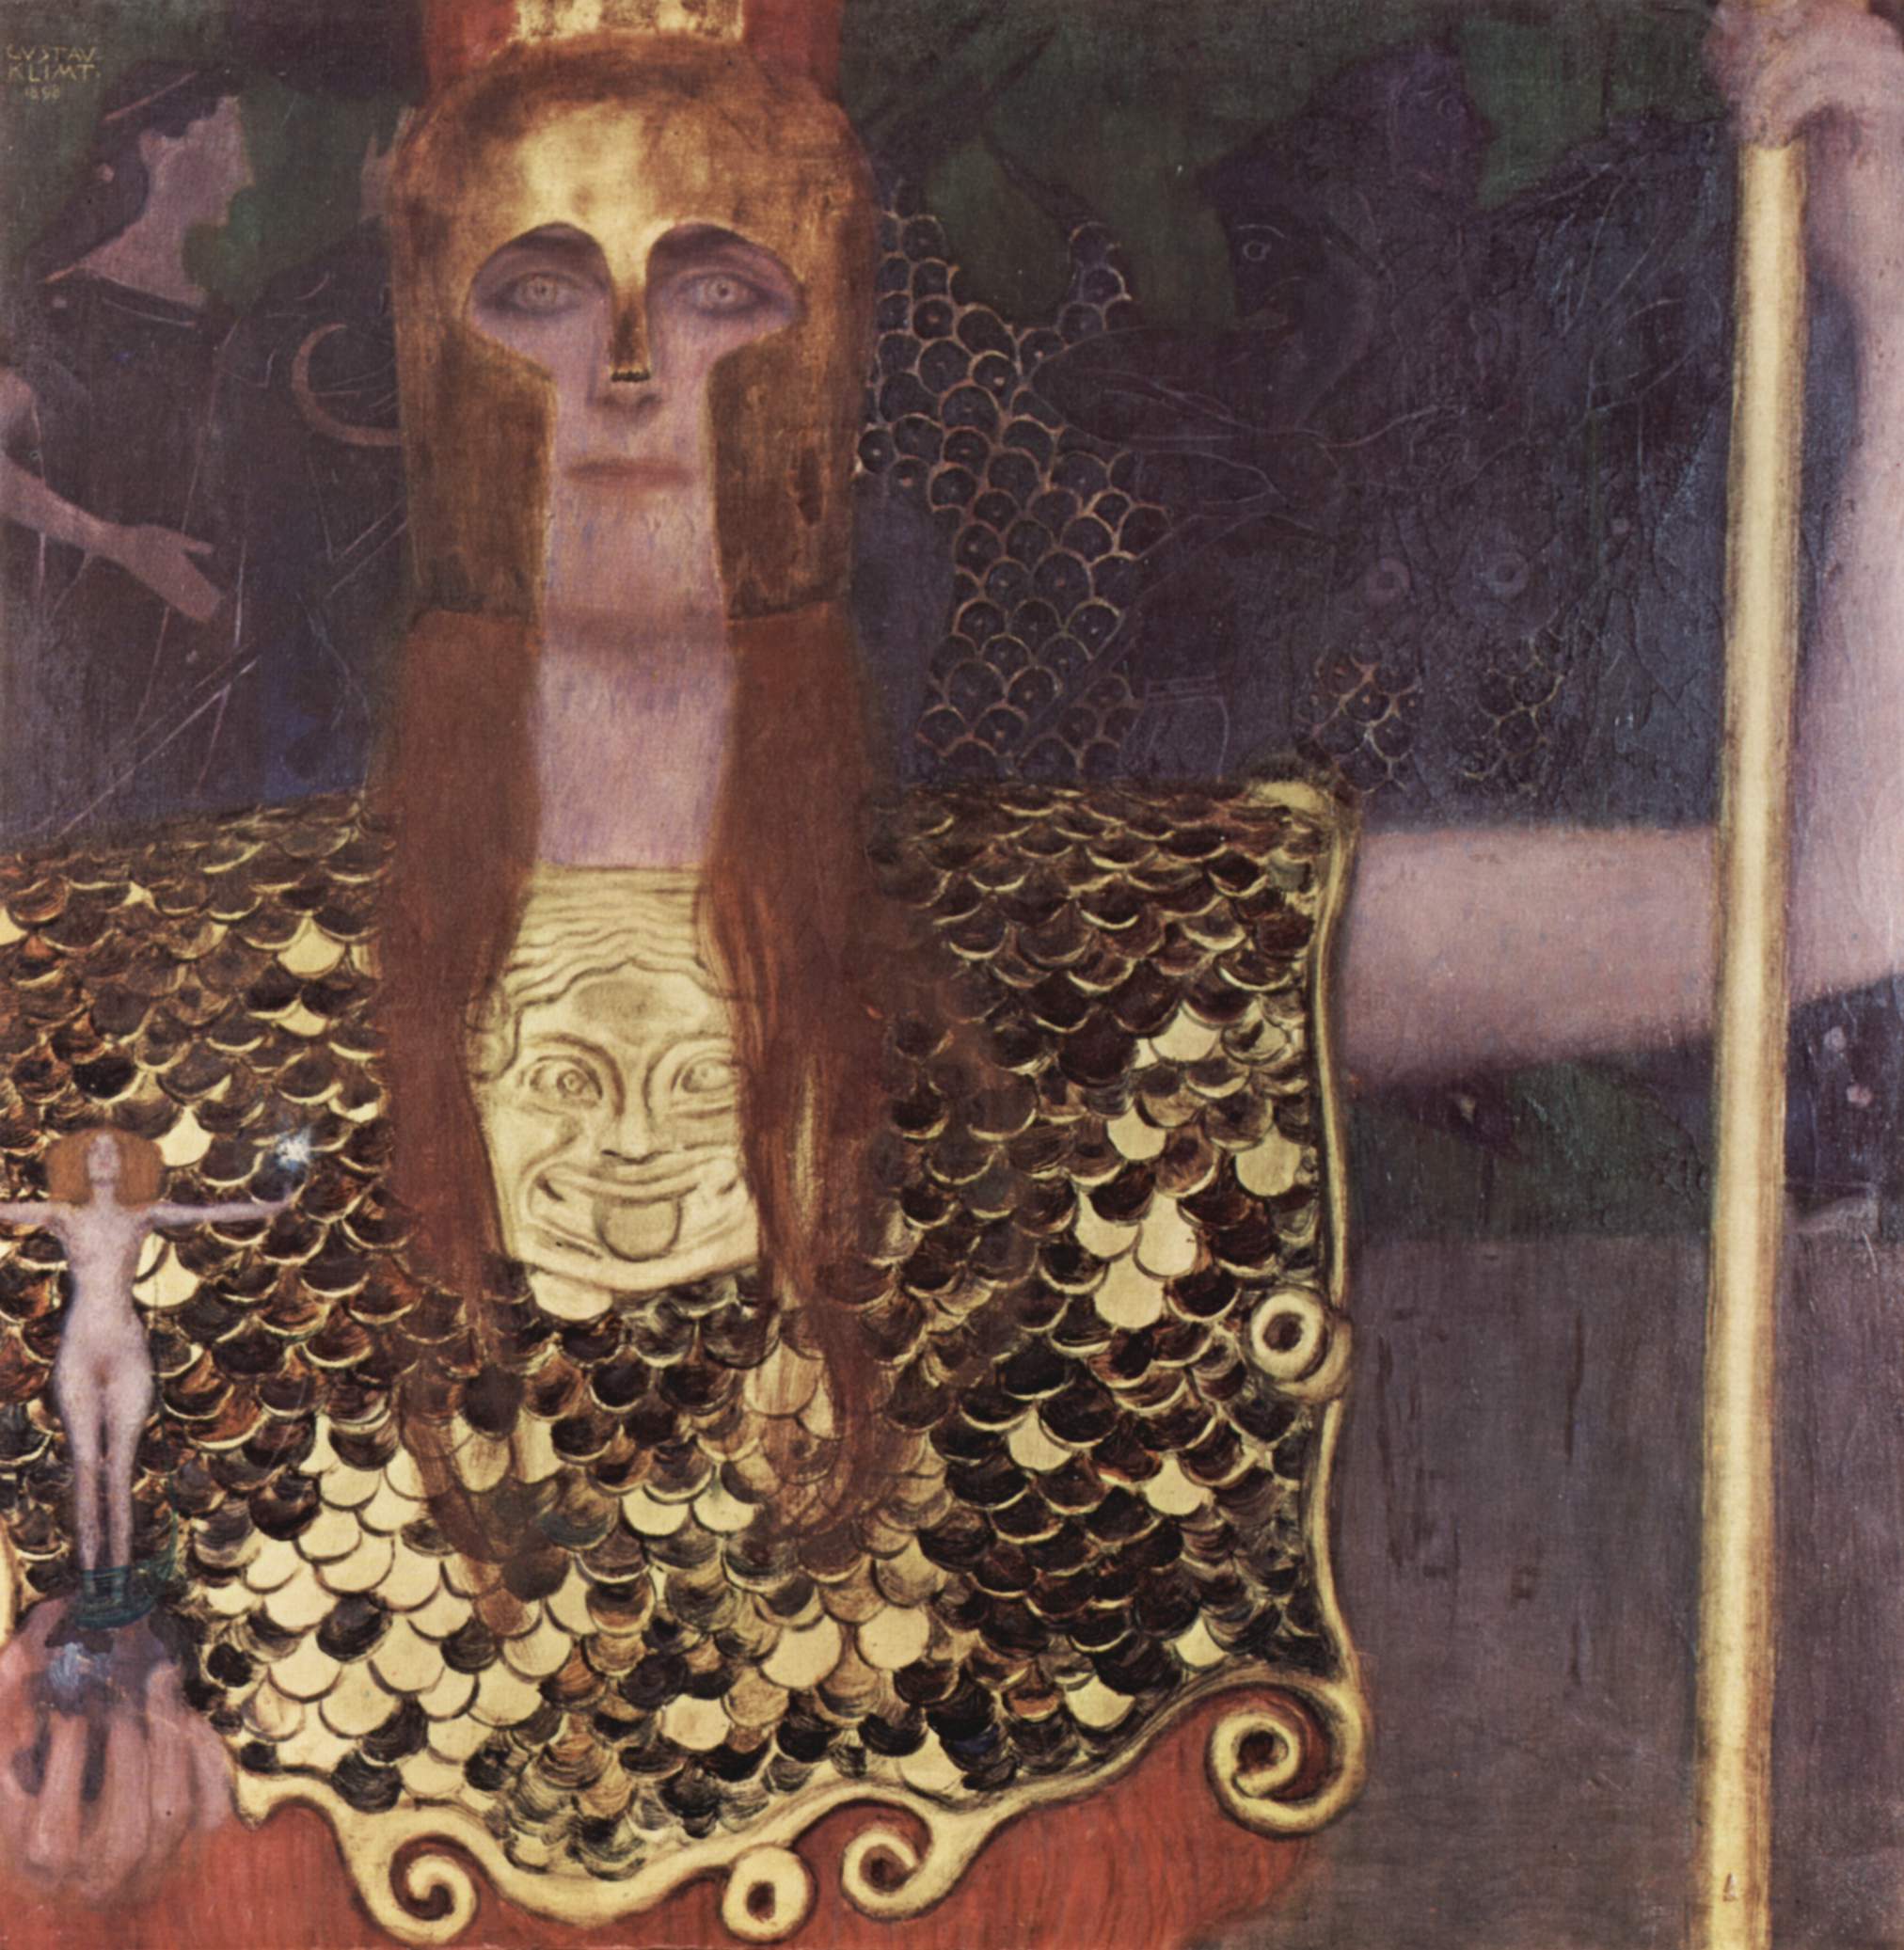 帕拉斯·雅典娜 by 古斯塔夫· 克林姆特画 - 1898 - 75 × 75 cm 